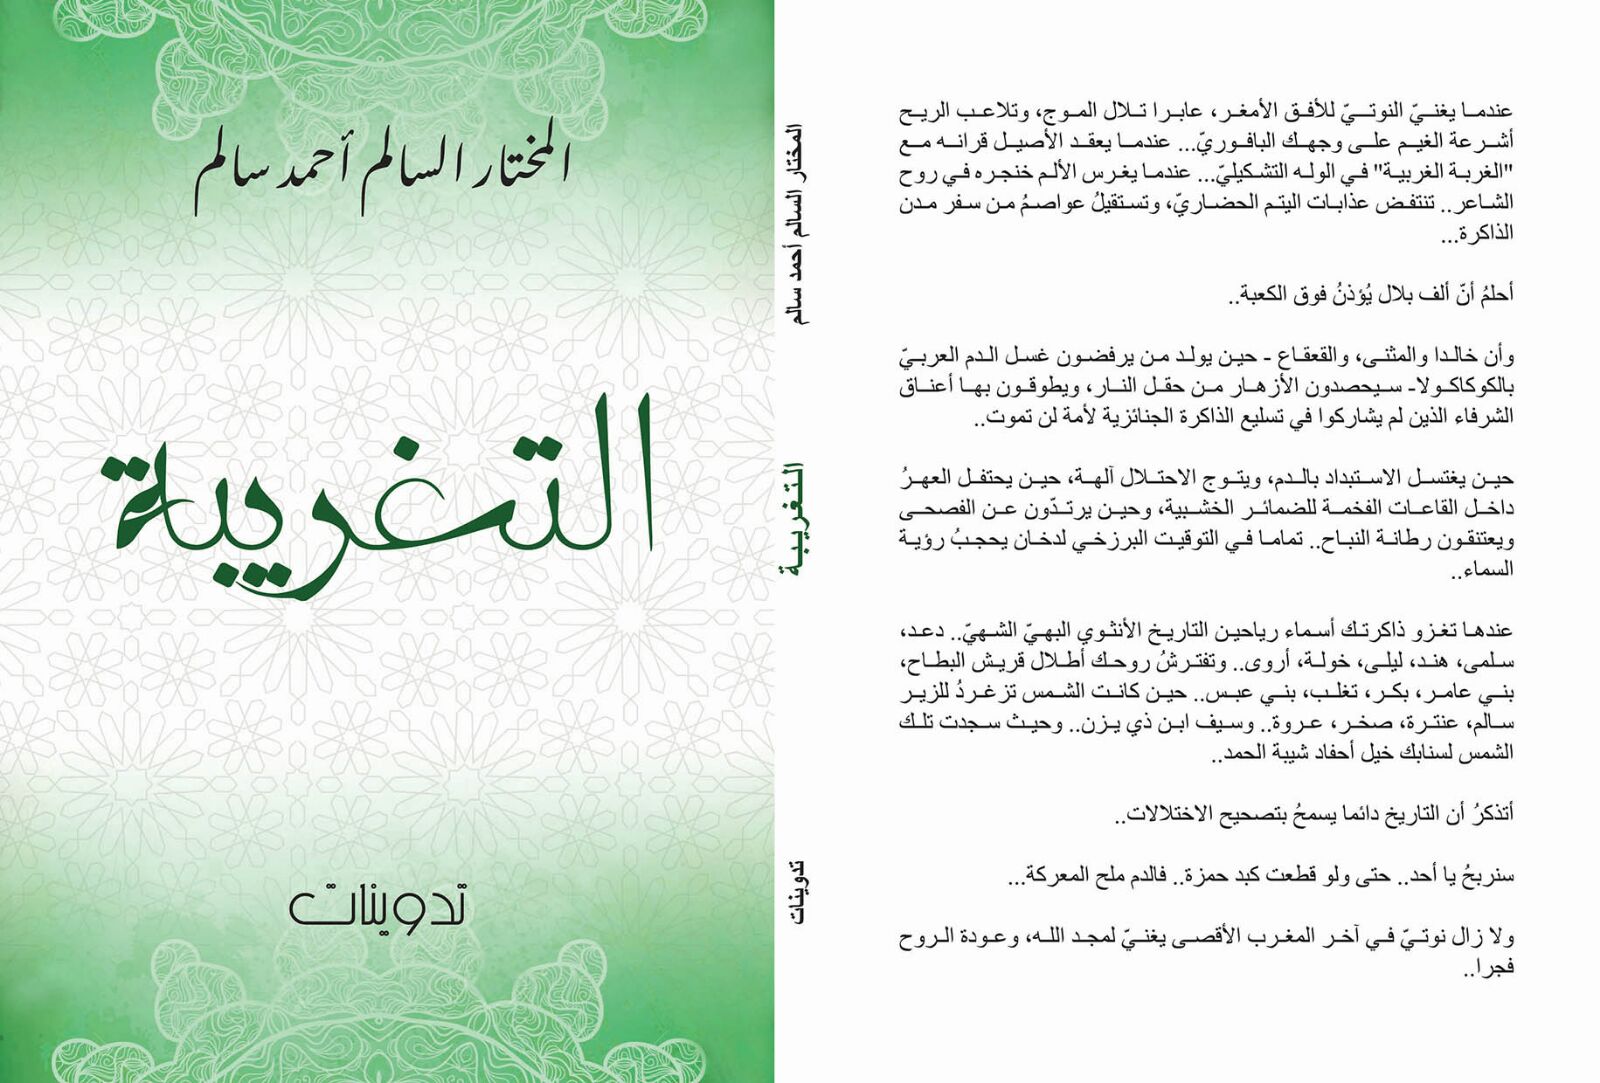 غلاف كتاب "التغربية" للشاعر والروائي المختار السالم أحمد سالم